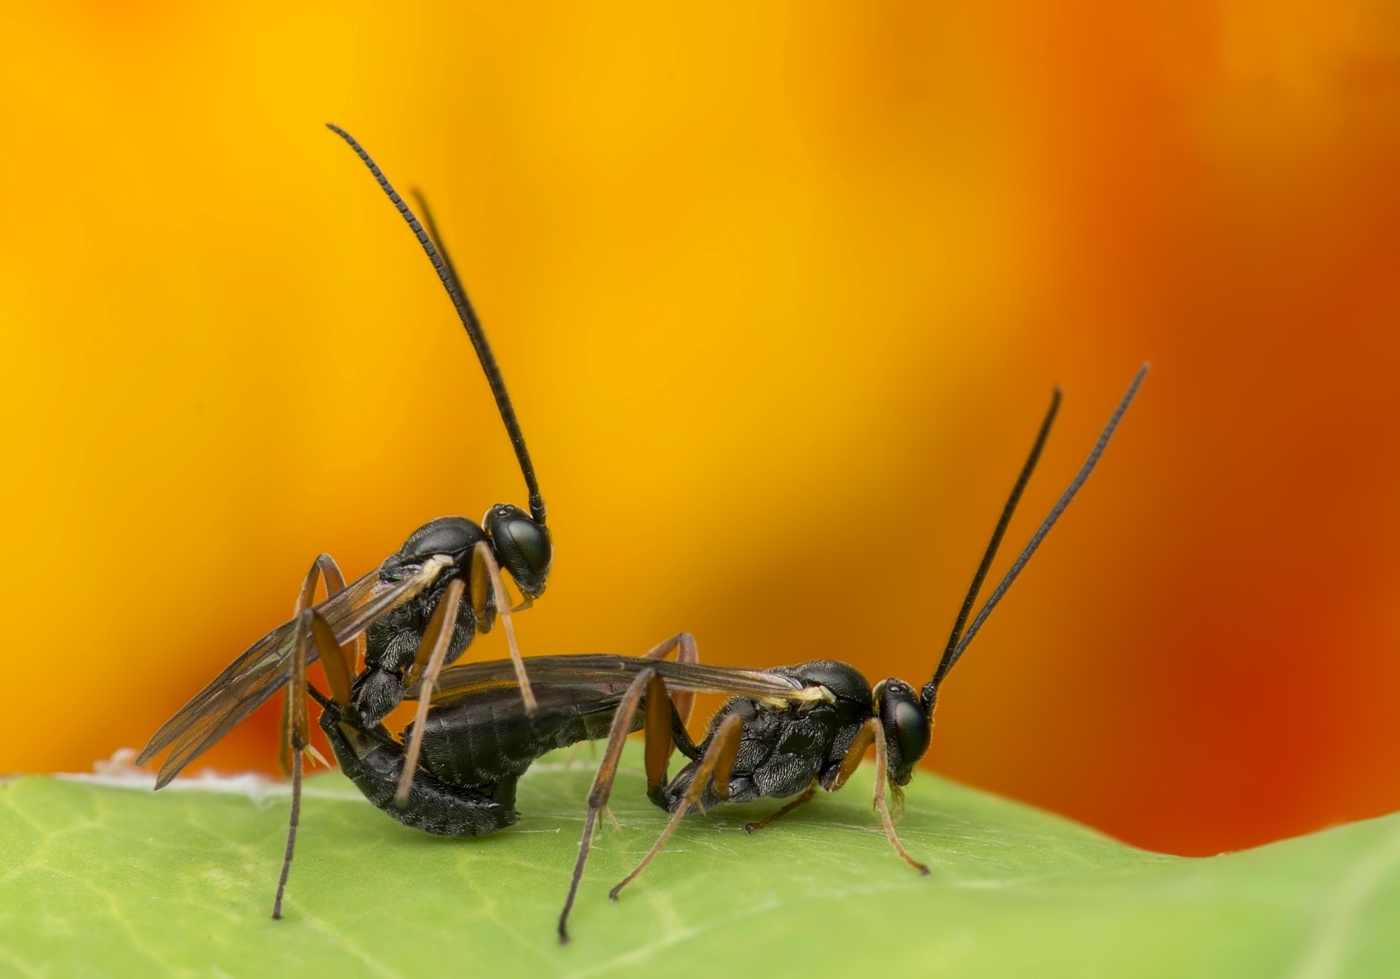 Mating icheumon wasps